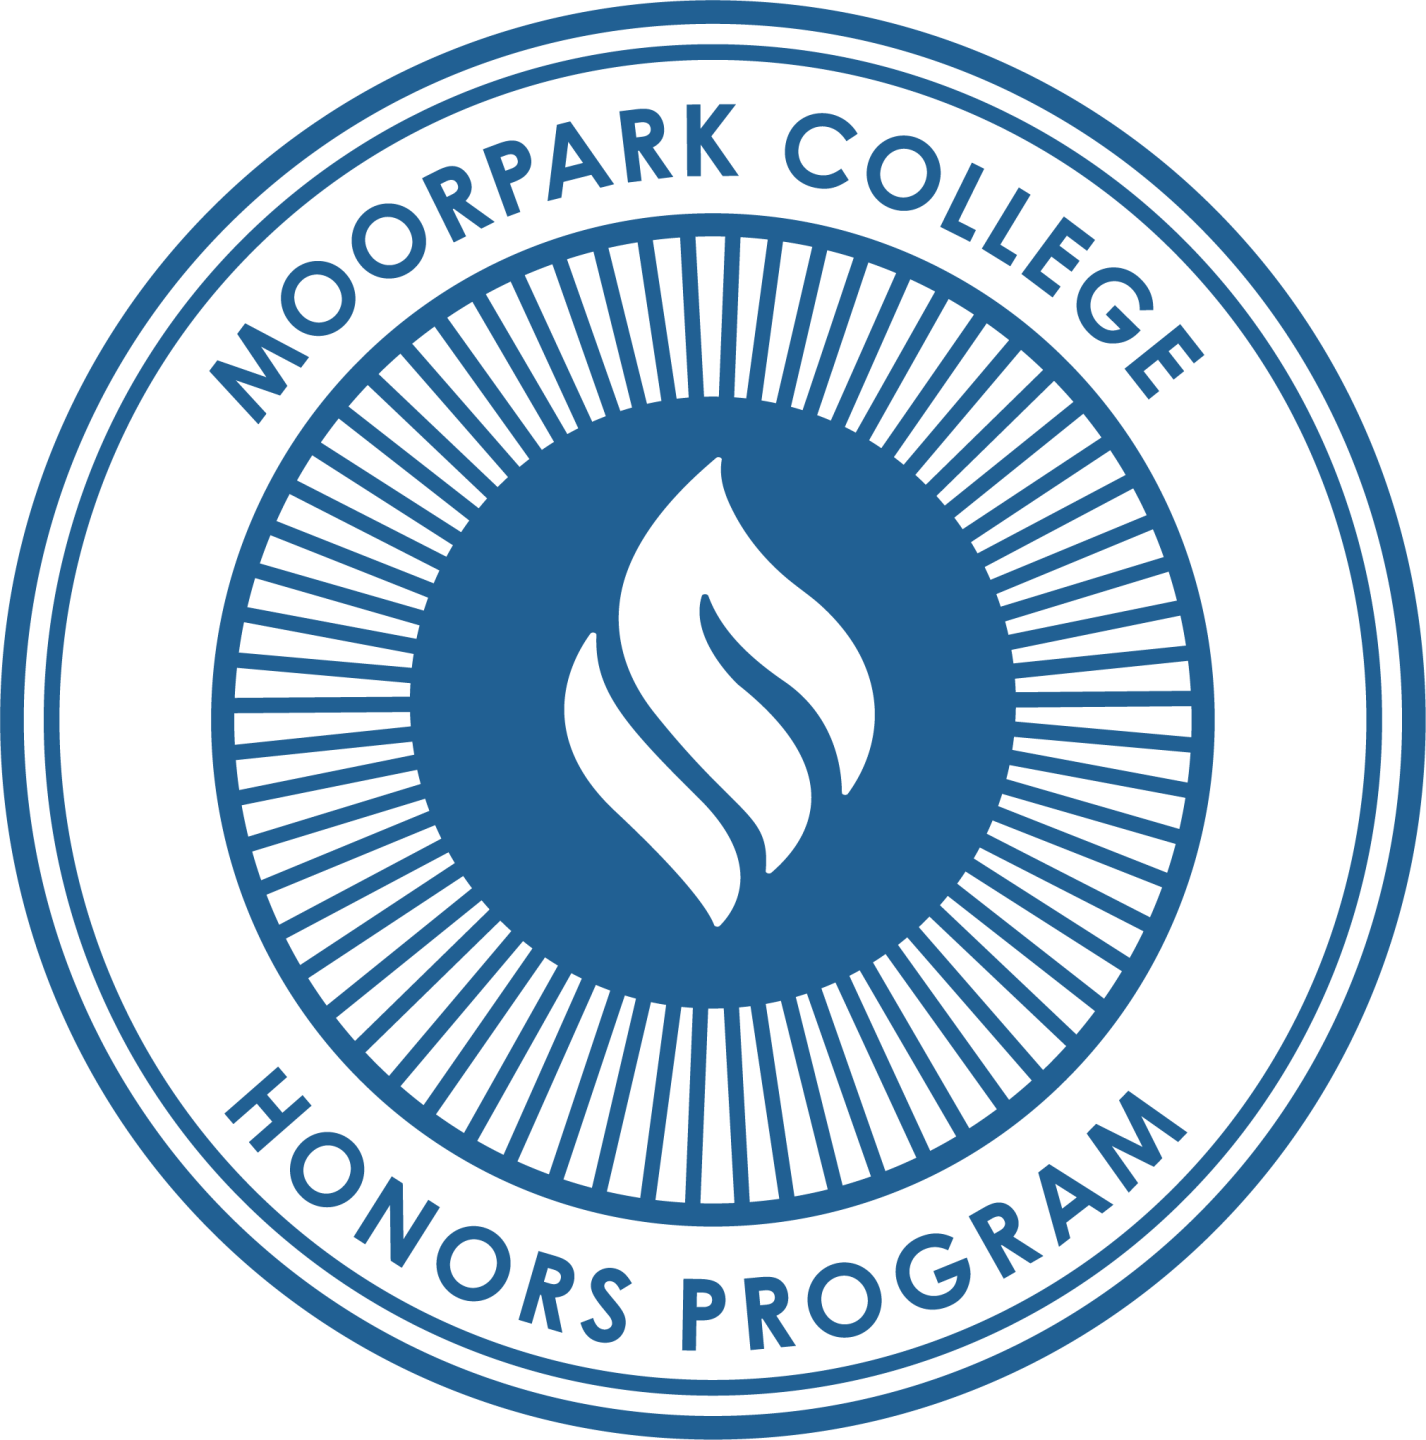 Honors Program logo in Blue